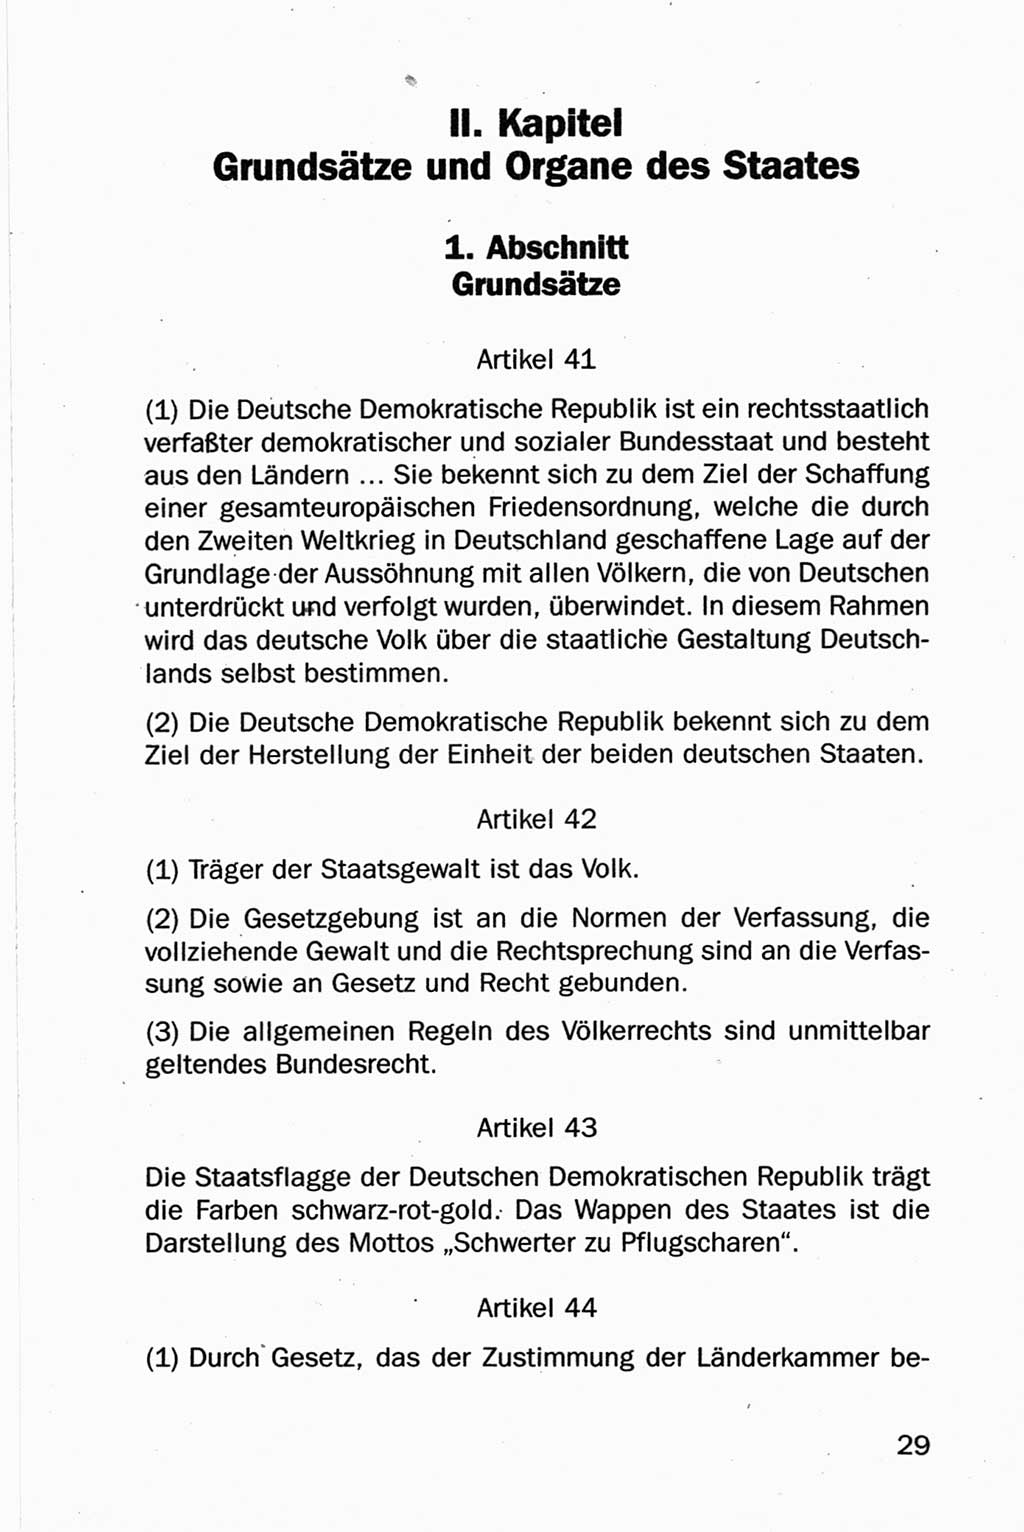 Entwurf Verfassung der Deutschen Demokratischen Republik (DDR), Arbeitsgruppe "Neue Verfassung der DDR" des Runden Tisches, Berlin 1990, Seite 29 (Entw. Verf. DDR 1990, S. 29)